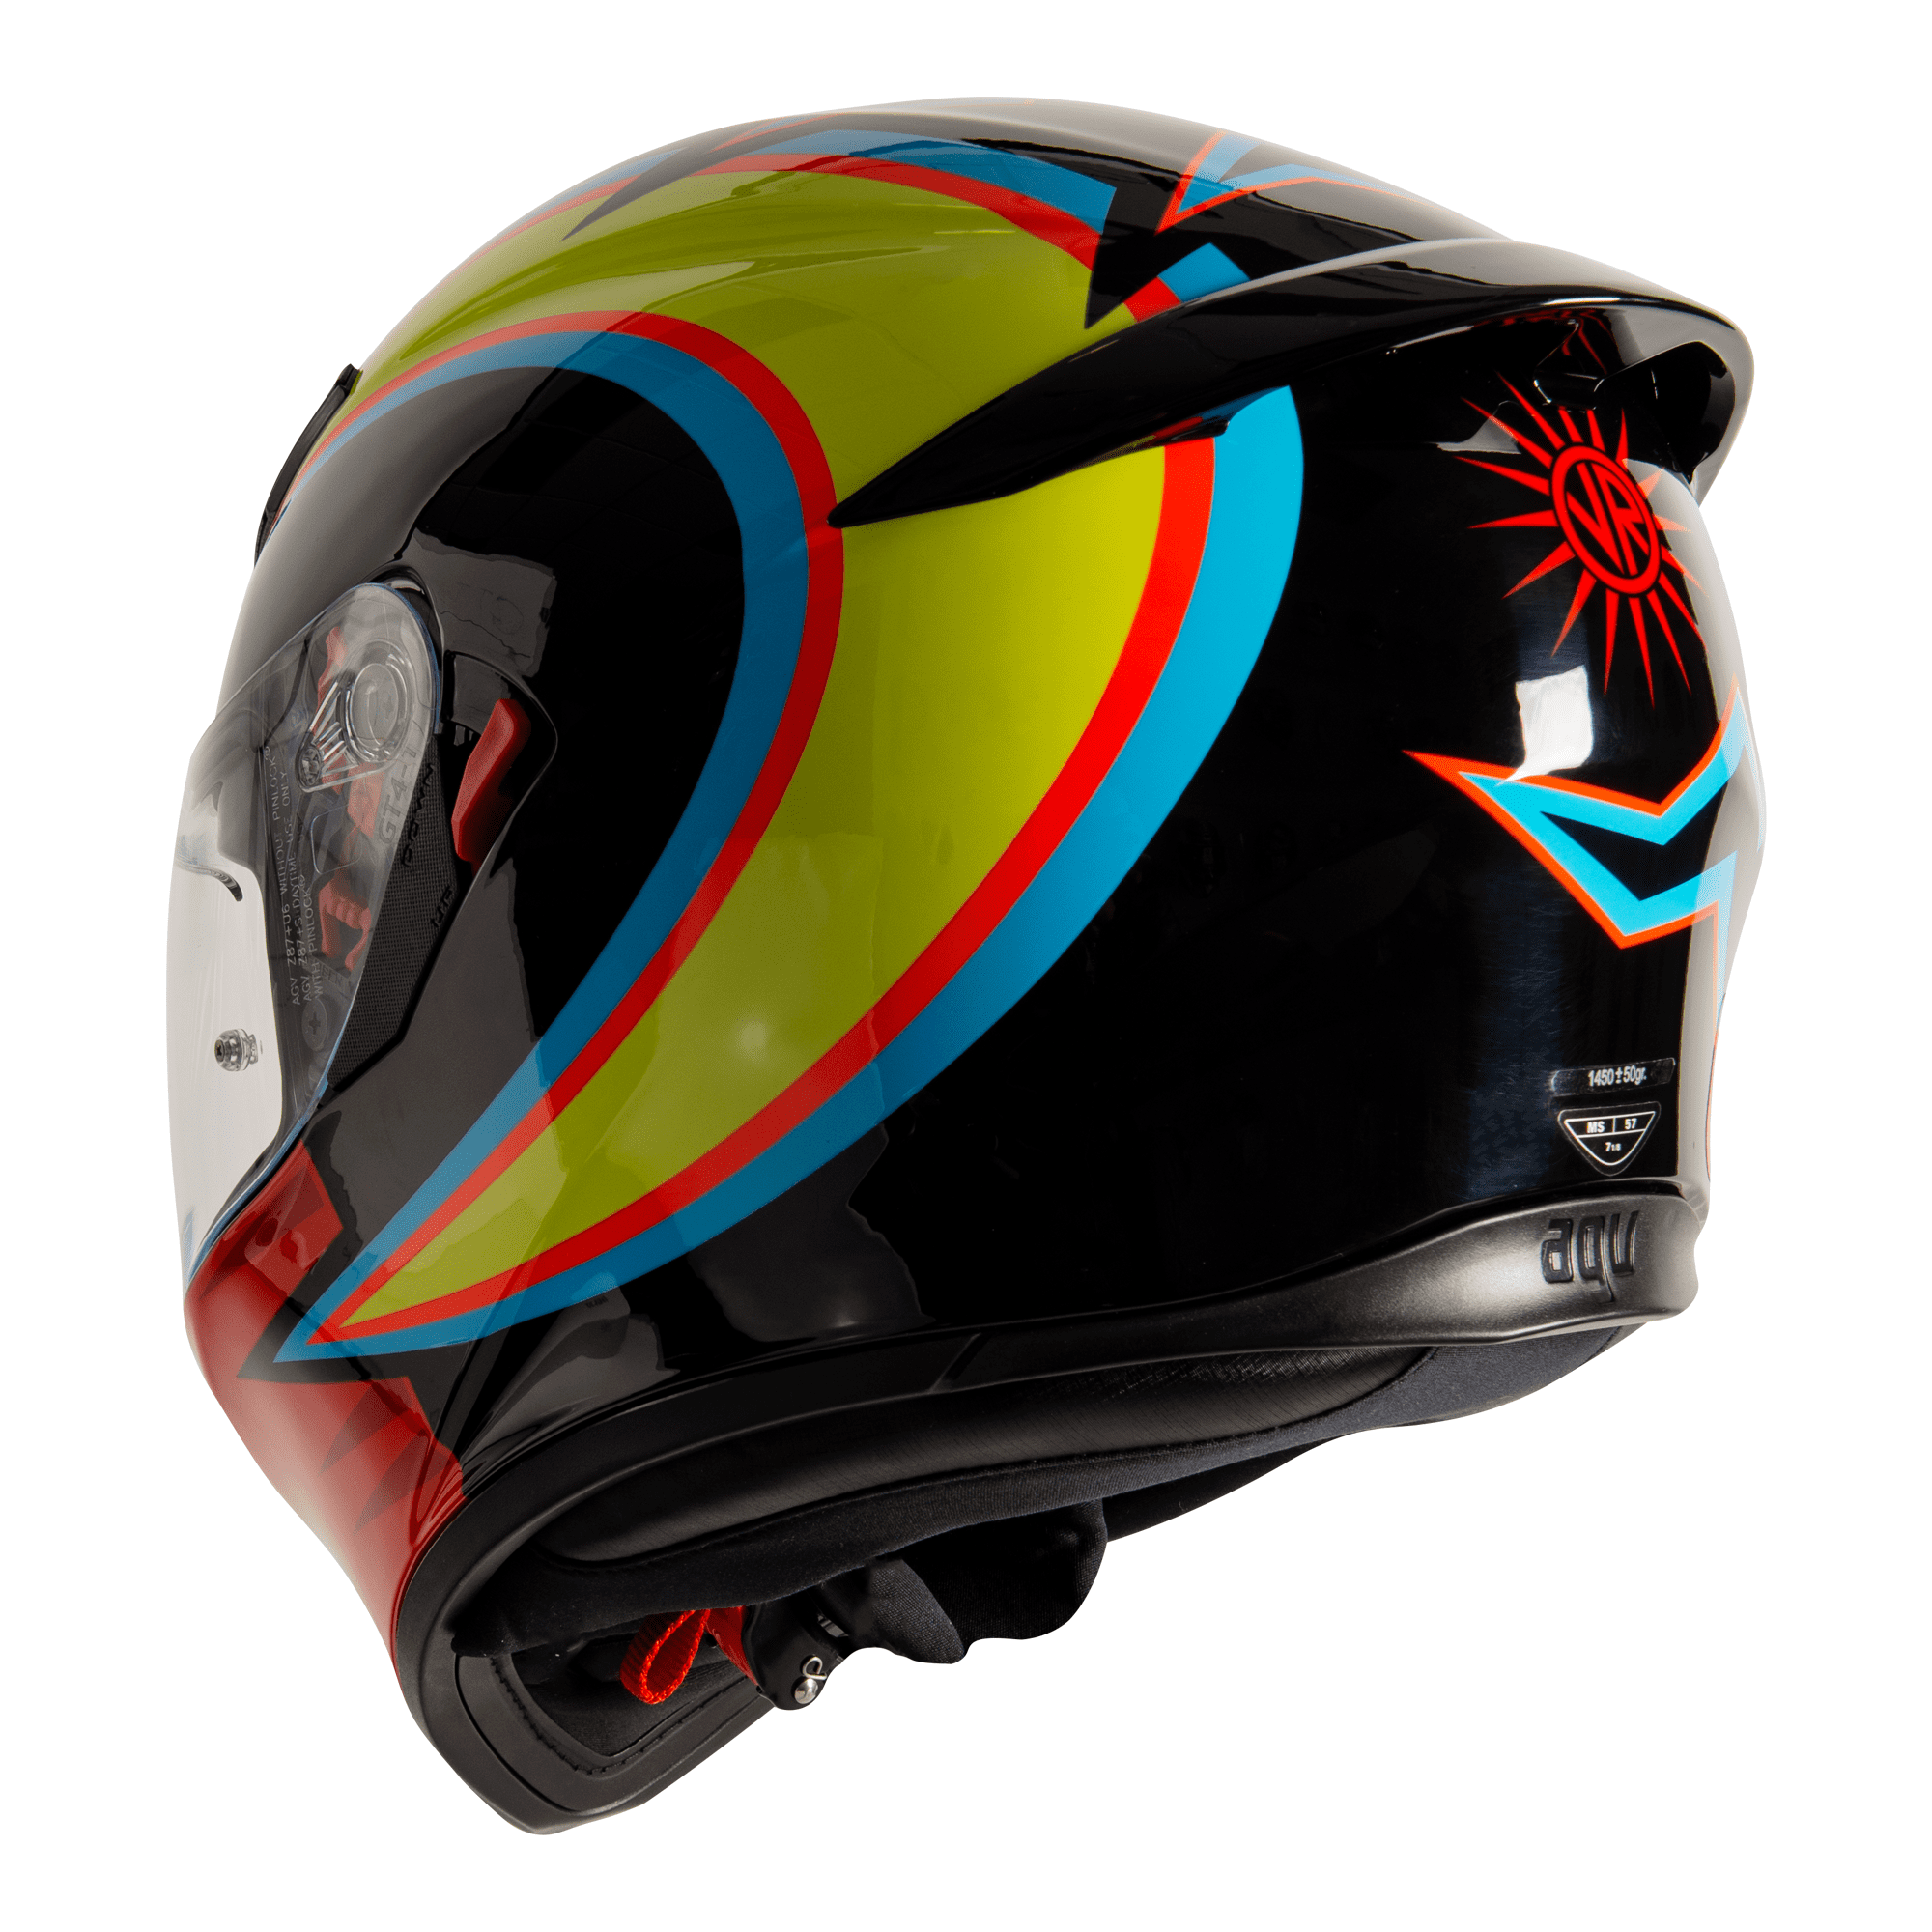  AGV  K3 SV S VR46 AGV  Full Face Helmets FREE UK DELIVERY